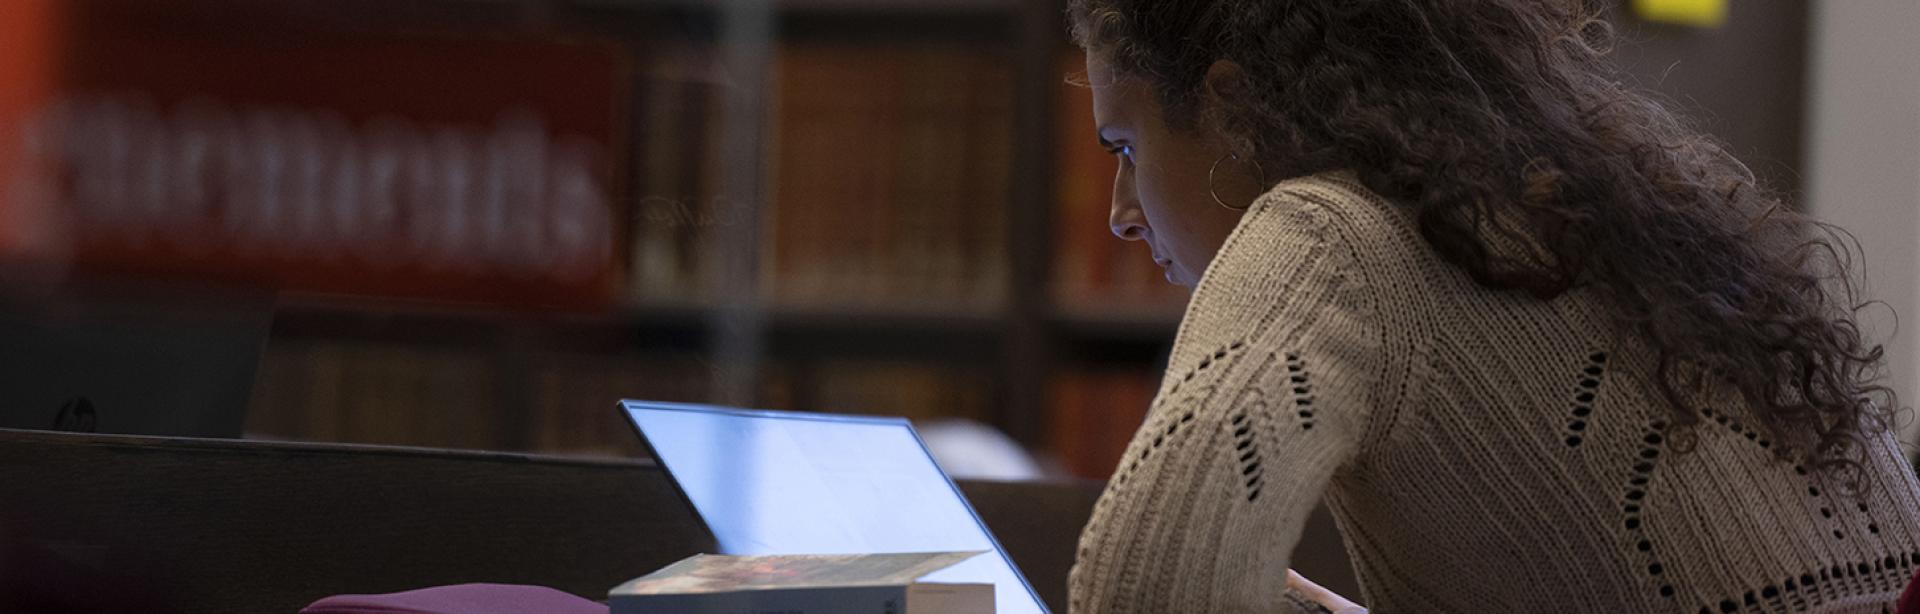 Une élève à la bibliothèque travaillant sur son ordinateur